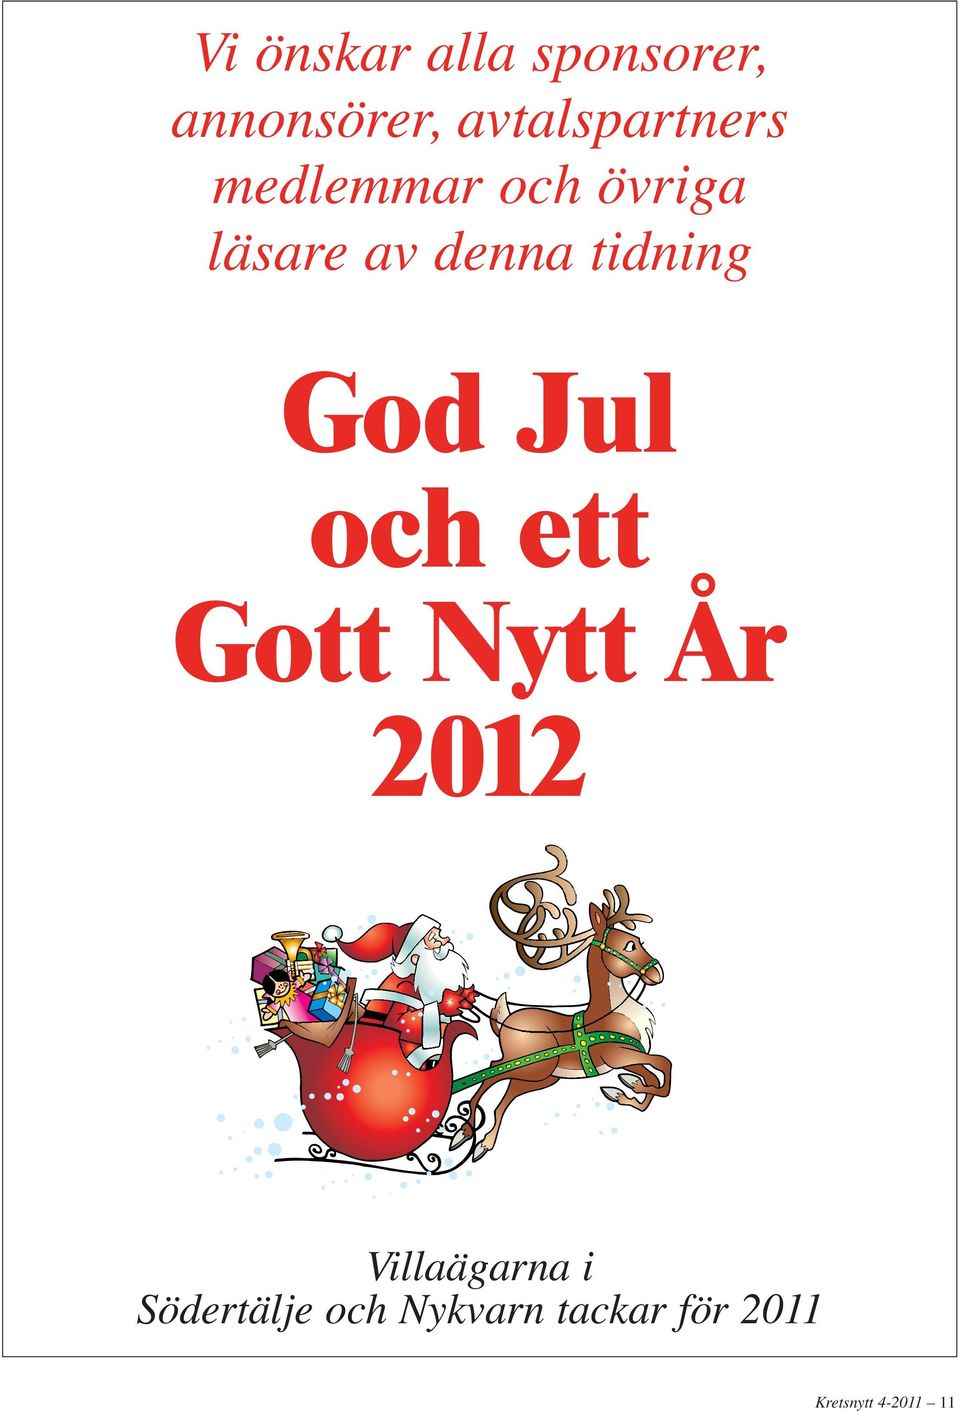 denna tidning God Jul och ett Gott Nytt År 2012